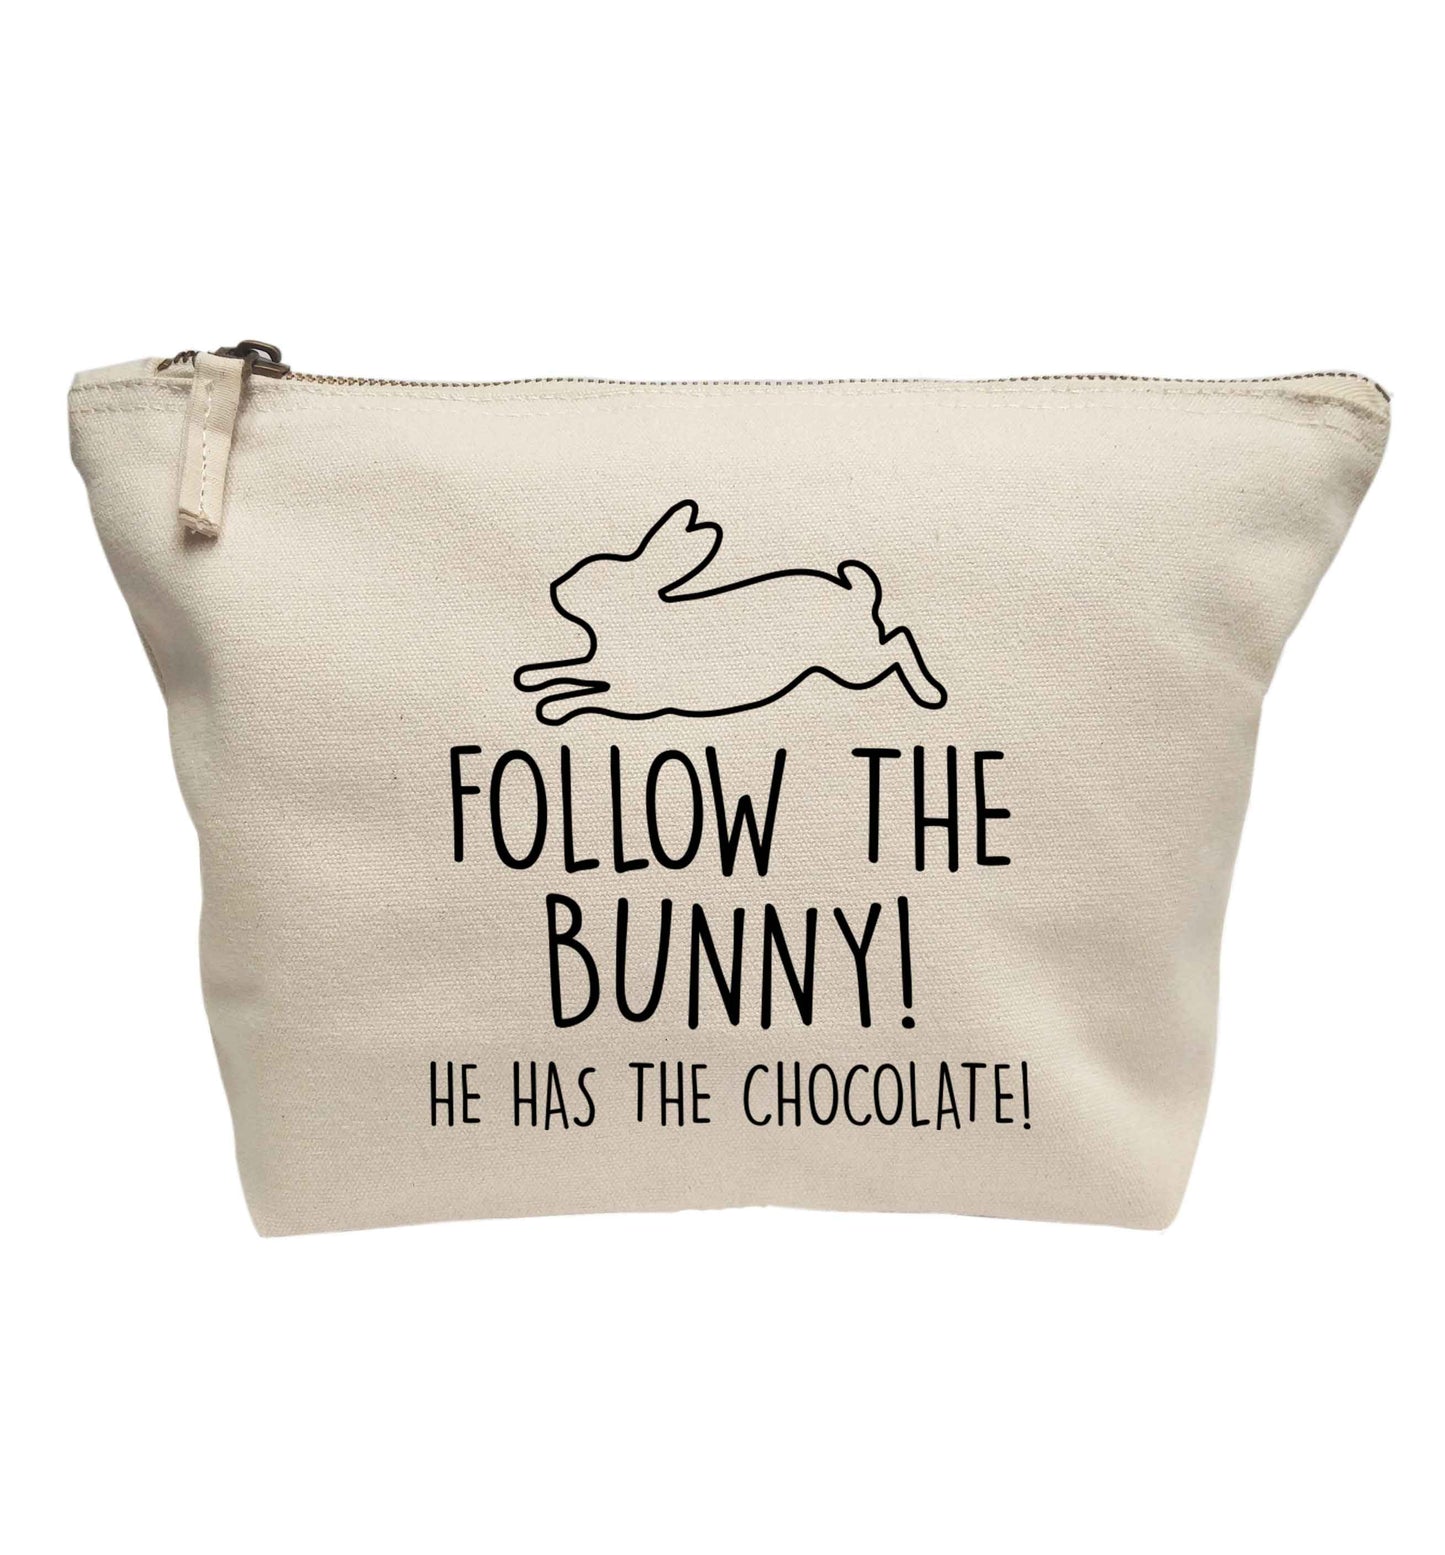 Follow the bunny! He has the chocolate | Makeup / wash bag